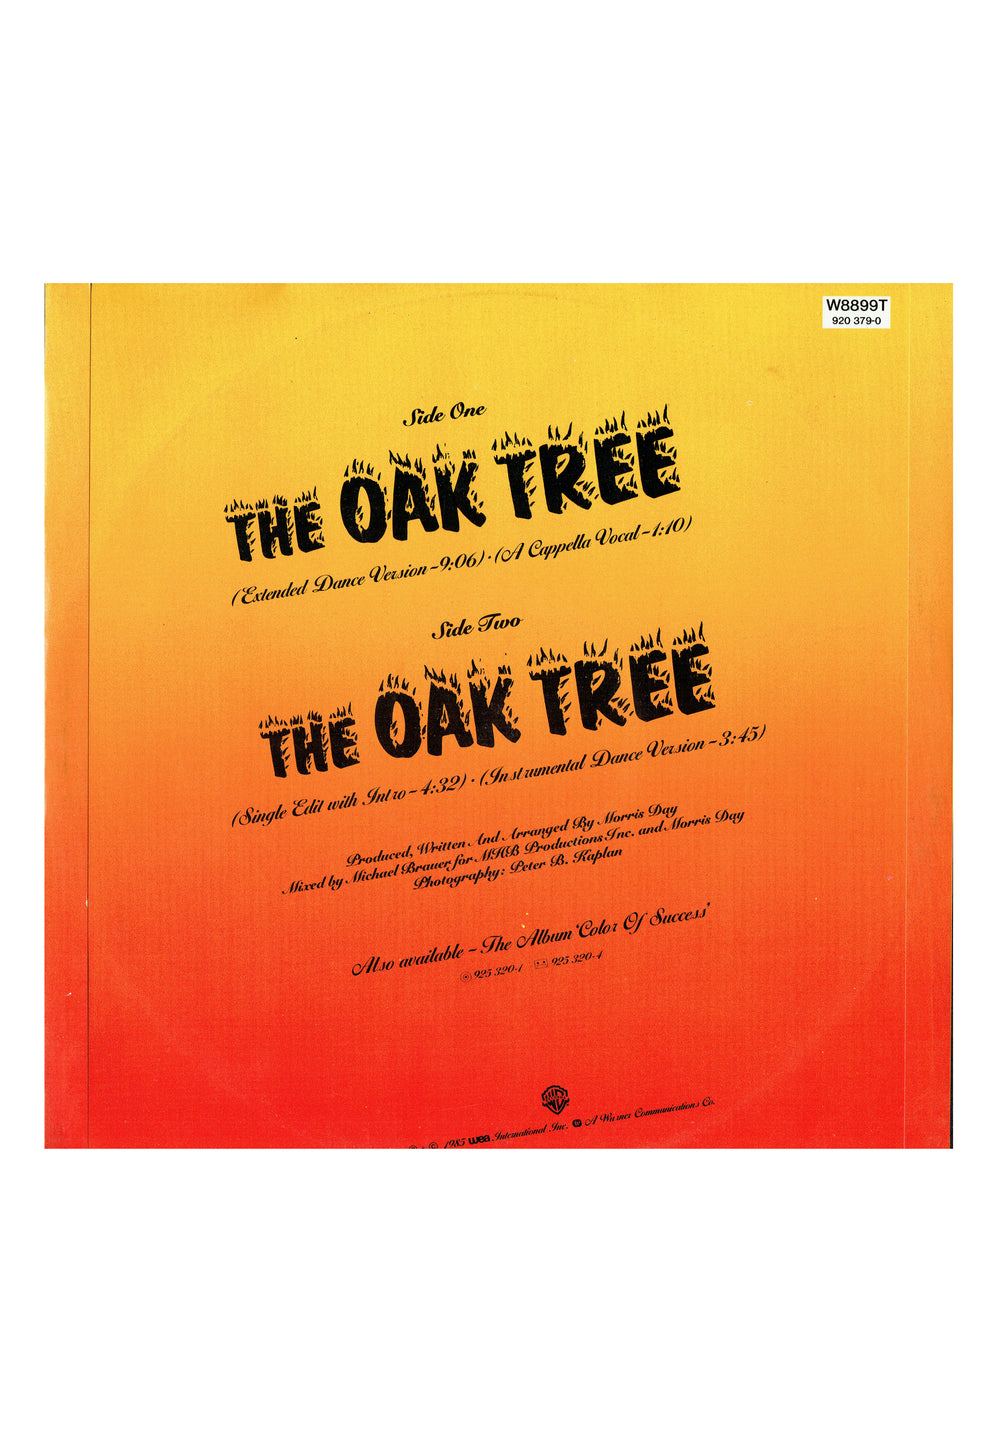 Prince – Morris Day The Oak Tree Vinyl 12" UK Preloved: 1985